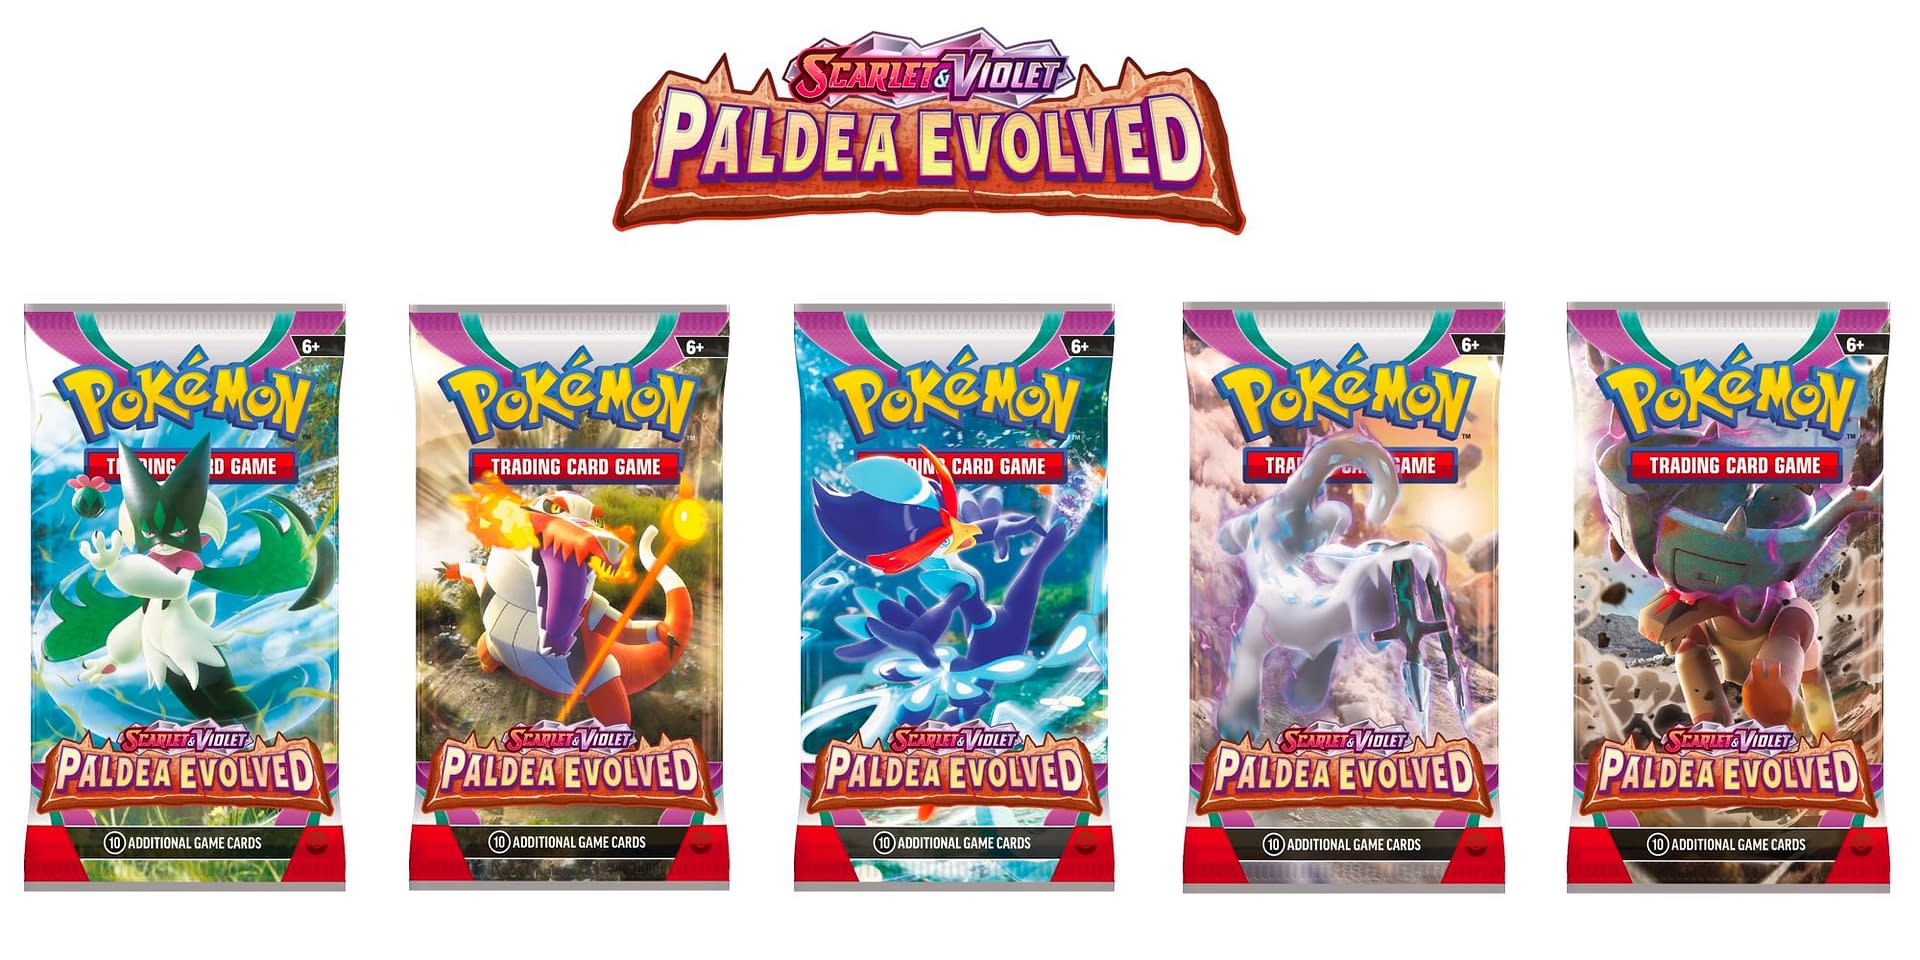 Pokémon TCG: Scarlet & Violet—Paldea Evolved